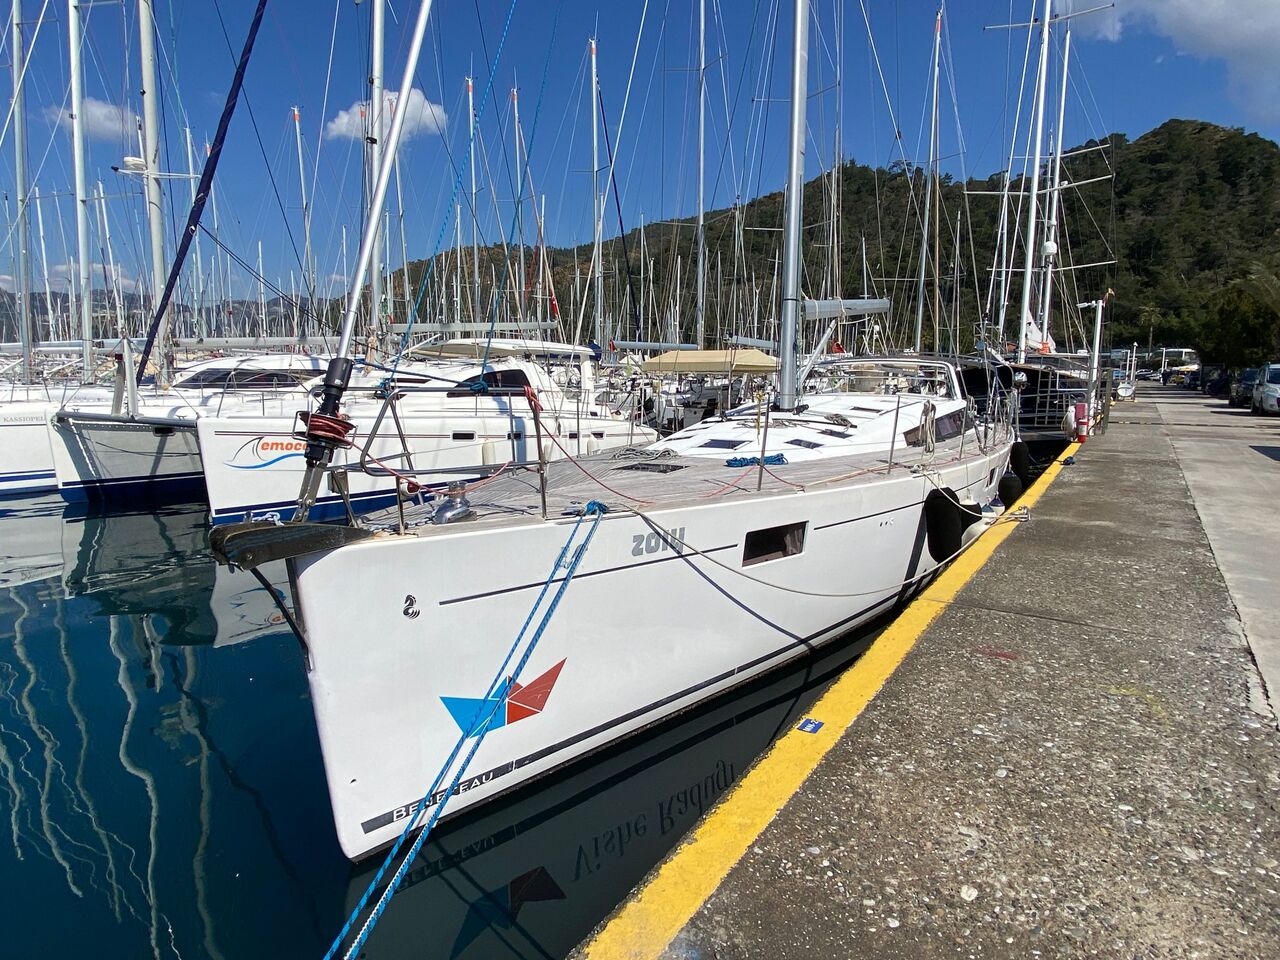 Bénéteau Sense 55 (sailboat) for sale